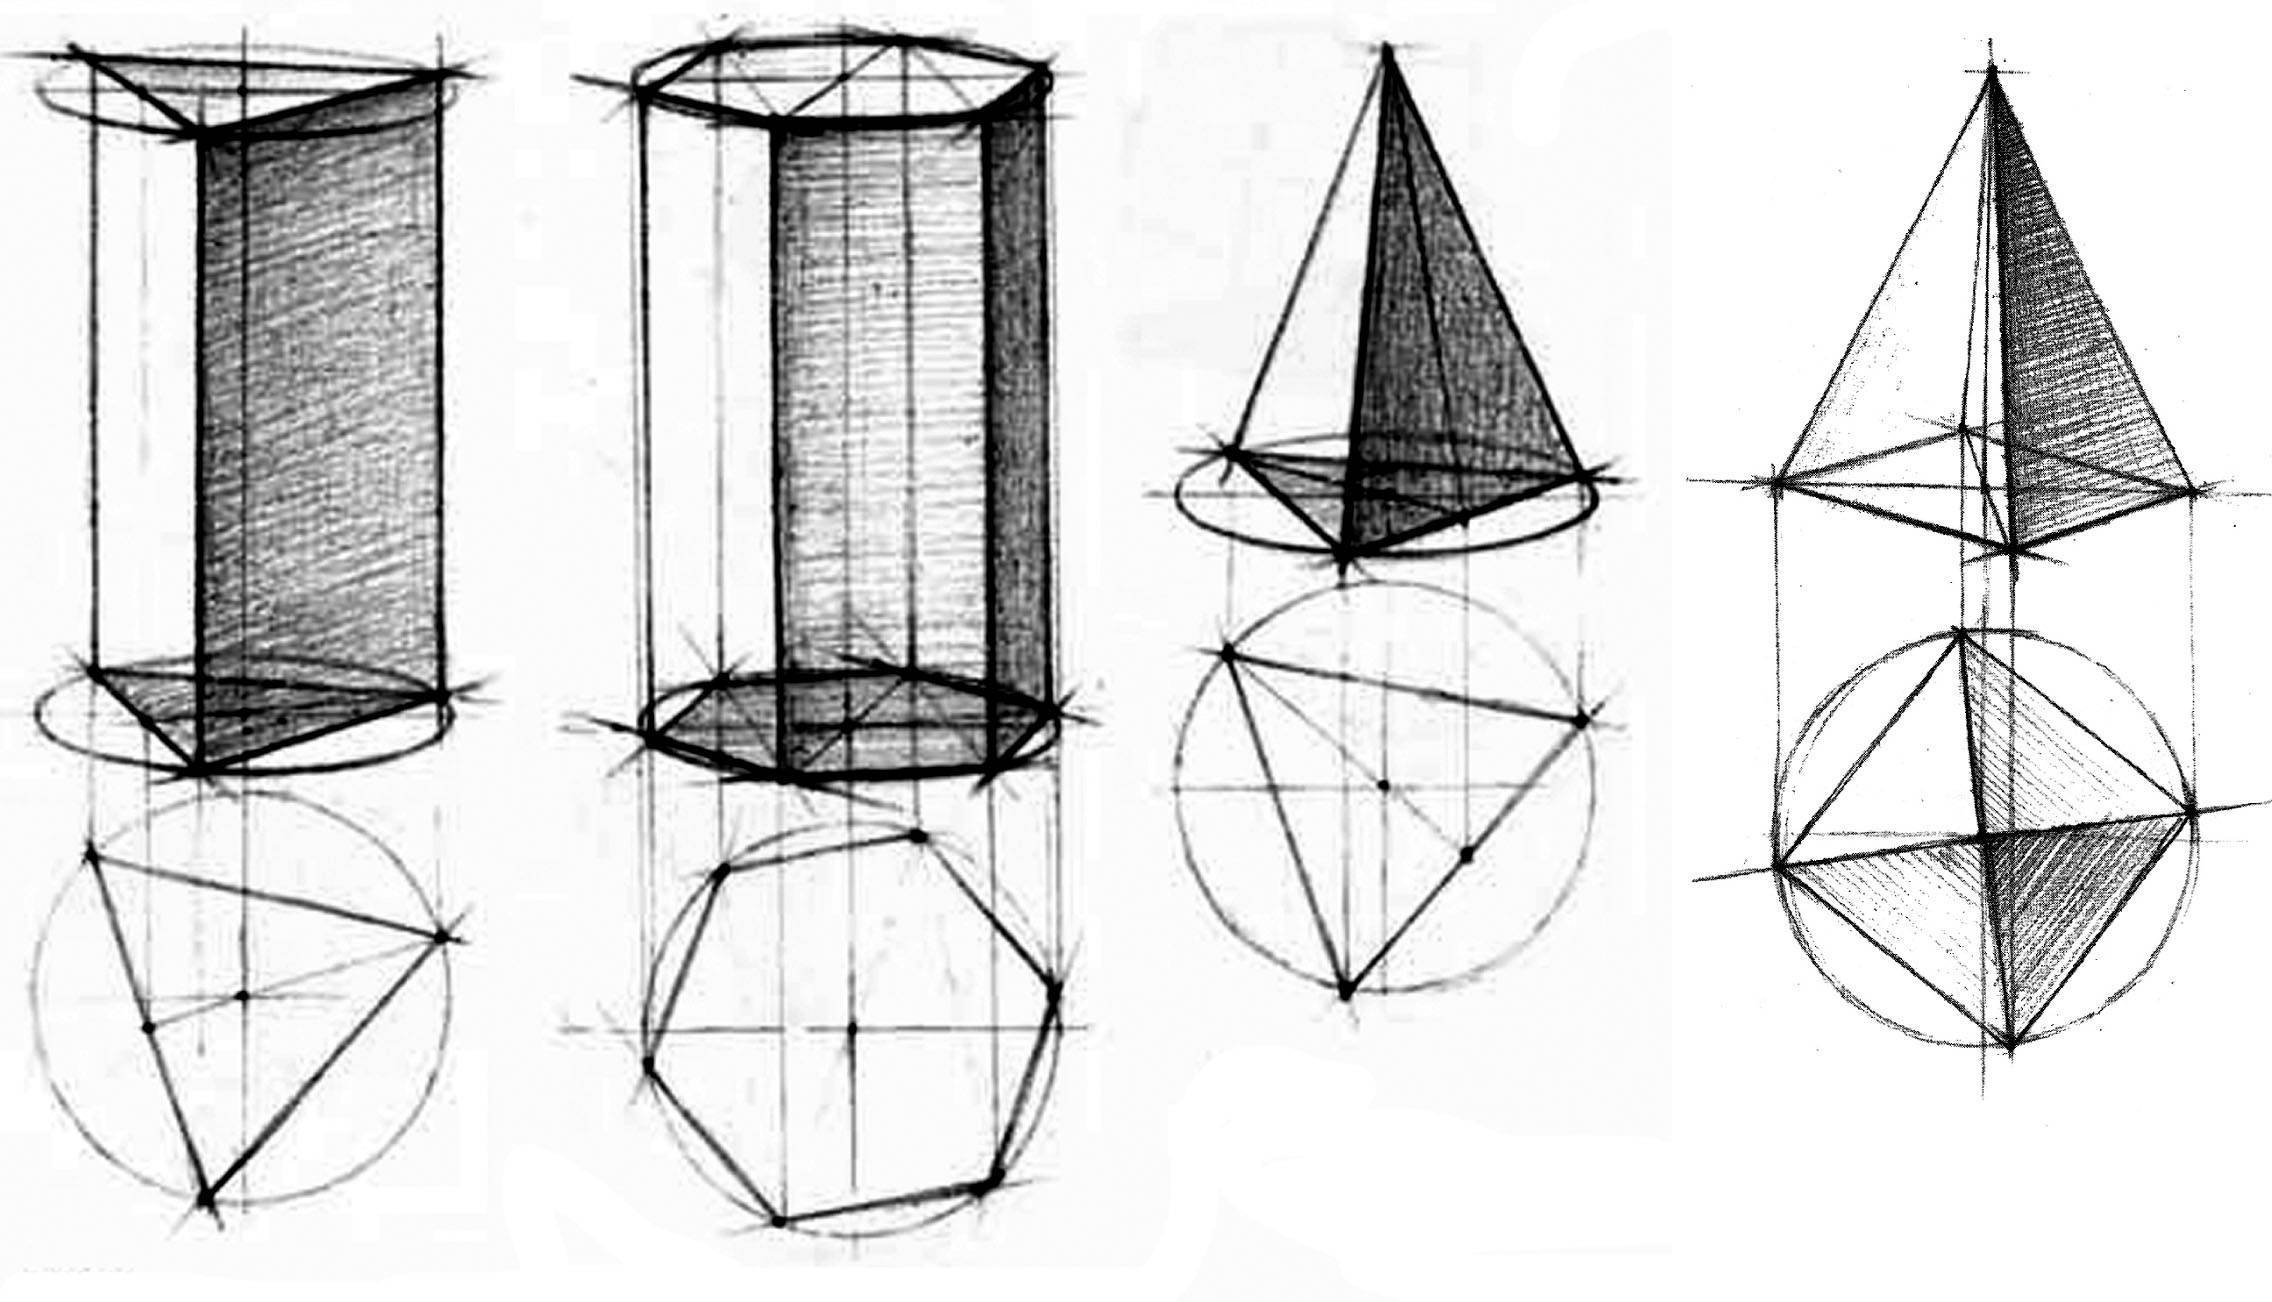 Рисование геометрических тел (Призма, пирамида, куб).